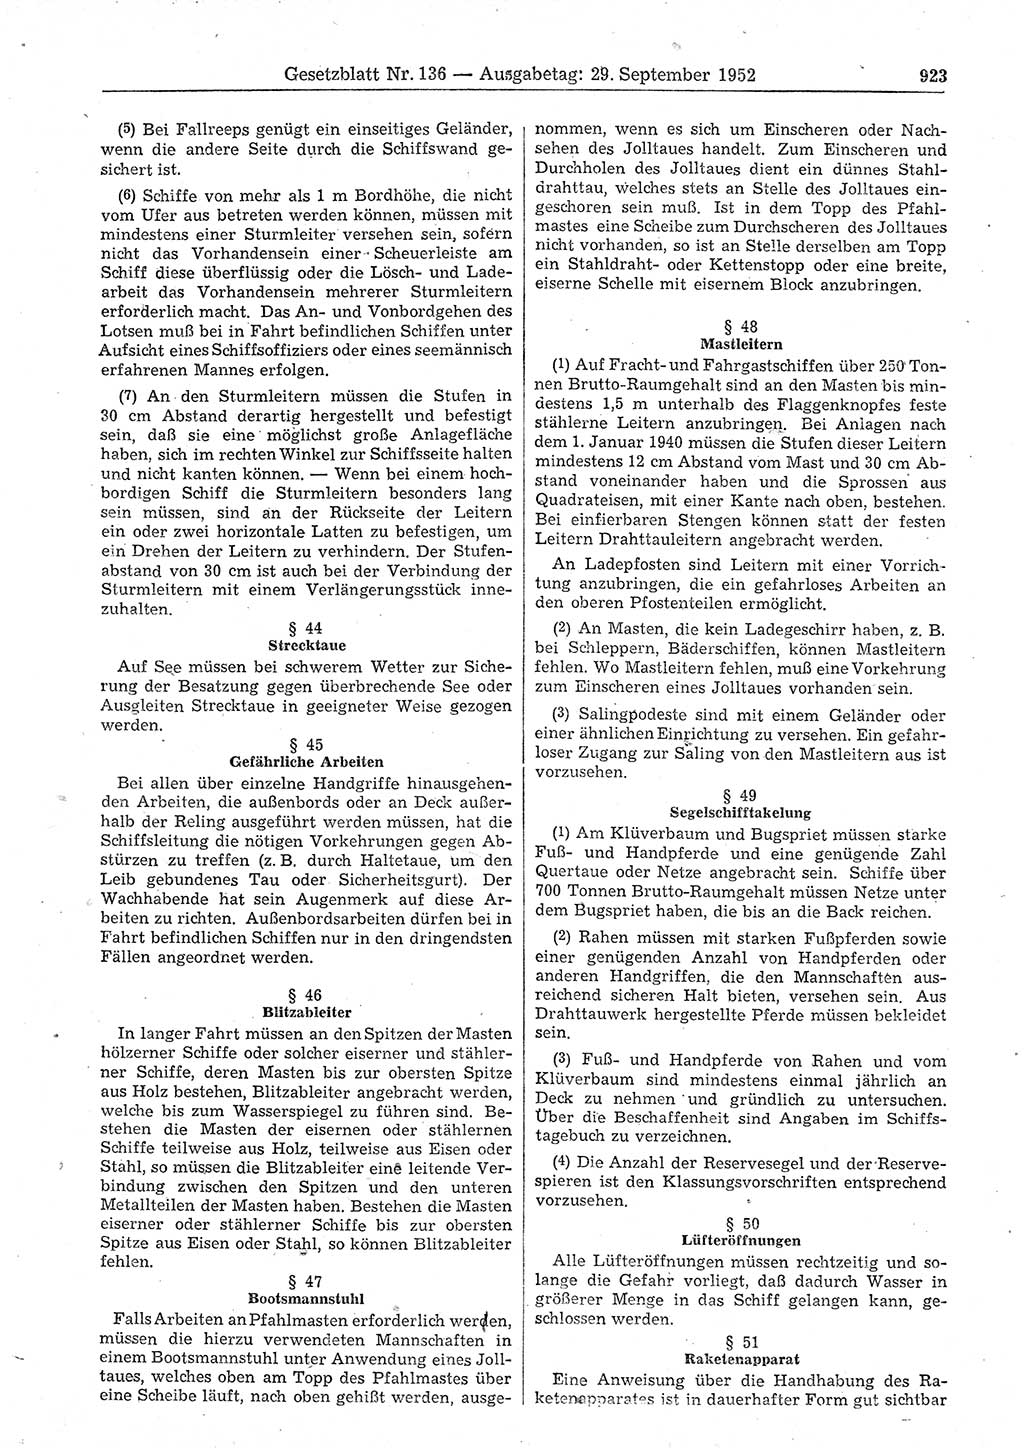 Gesetzblatt (GBl.) der Deutschen Demokratischen Republik (DDR) 1952, Seite 923 (GBl. DDR 1952, S. 923)